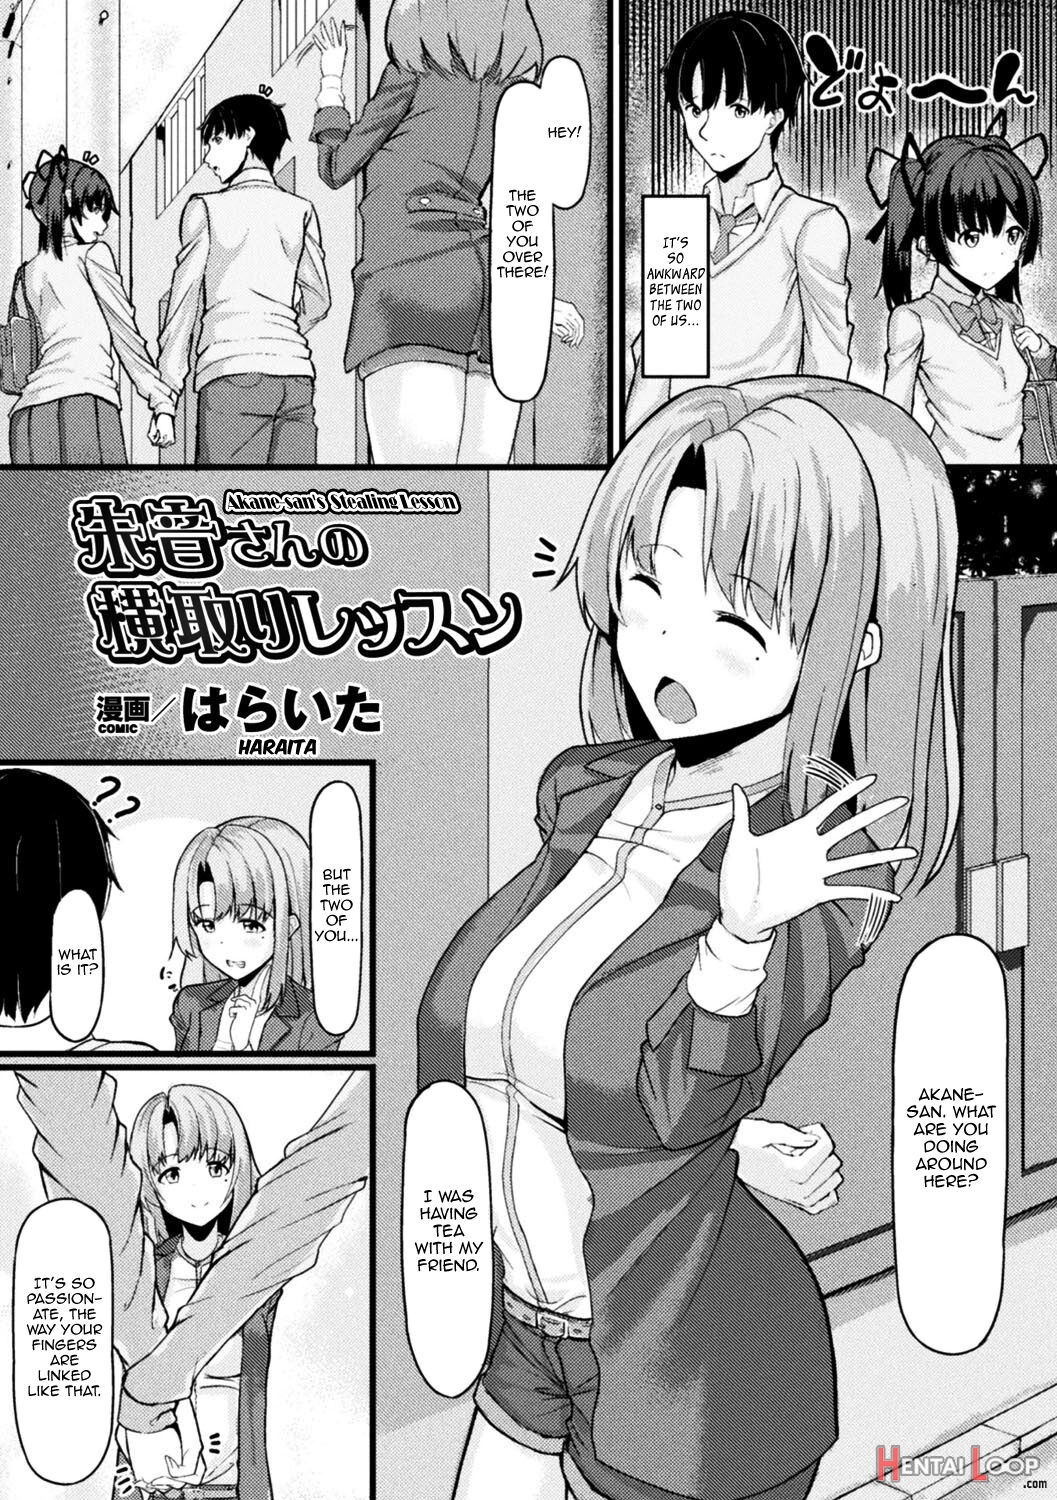 Akane-san's Stealing Lesson page 2